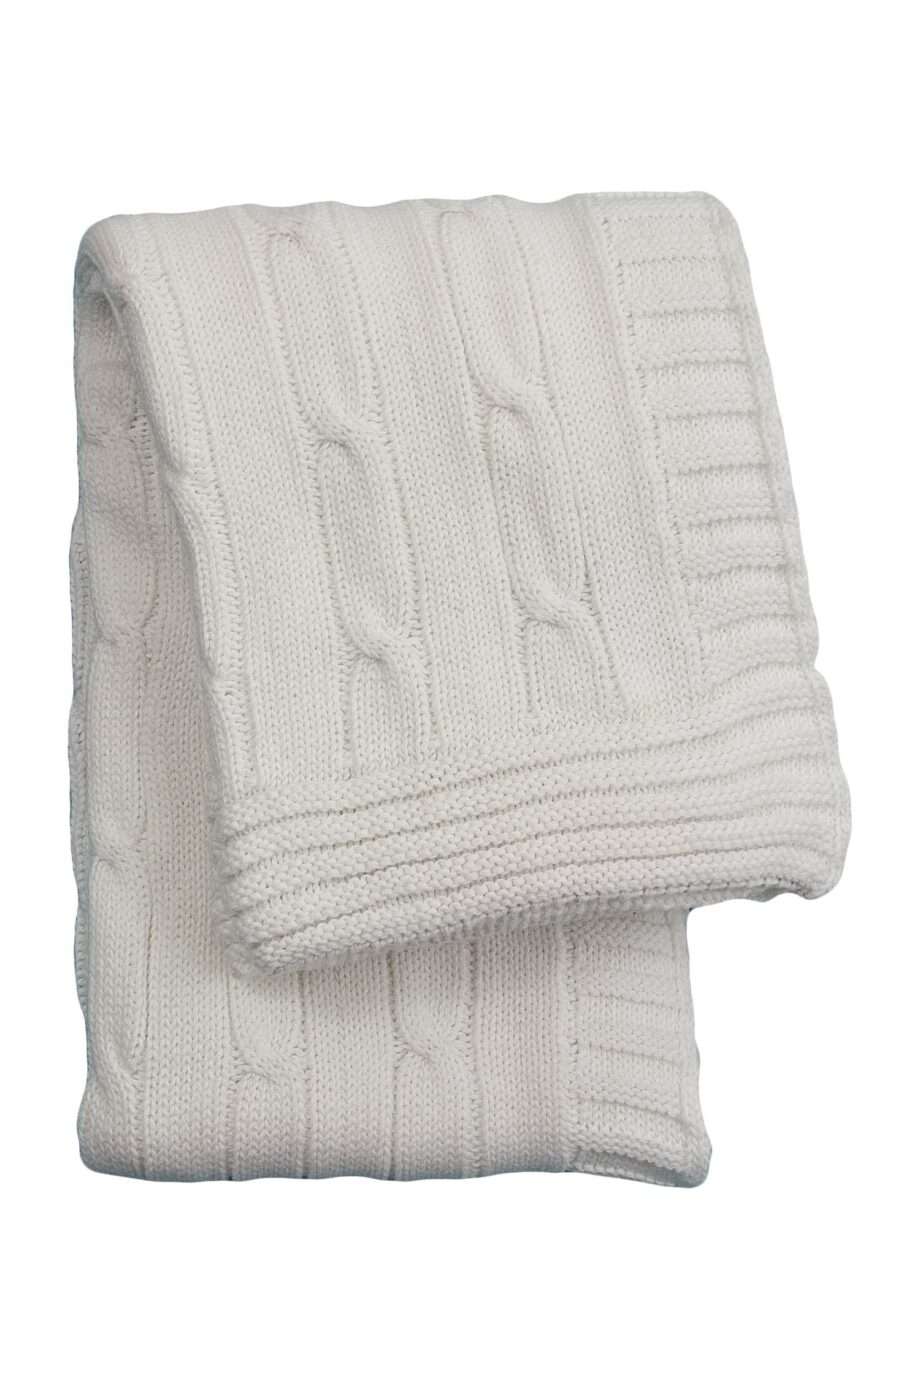 twist white knitted cotton little blanket medium